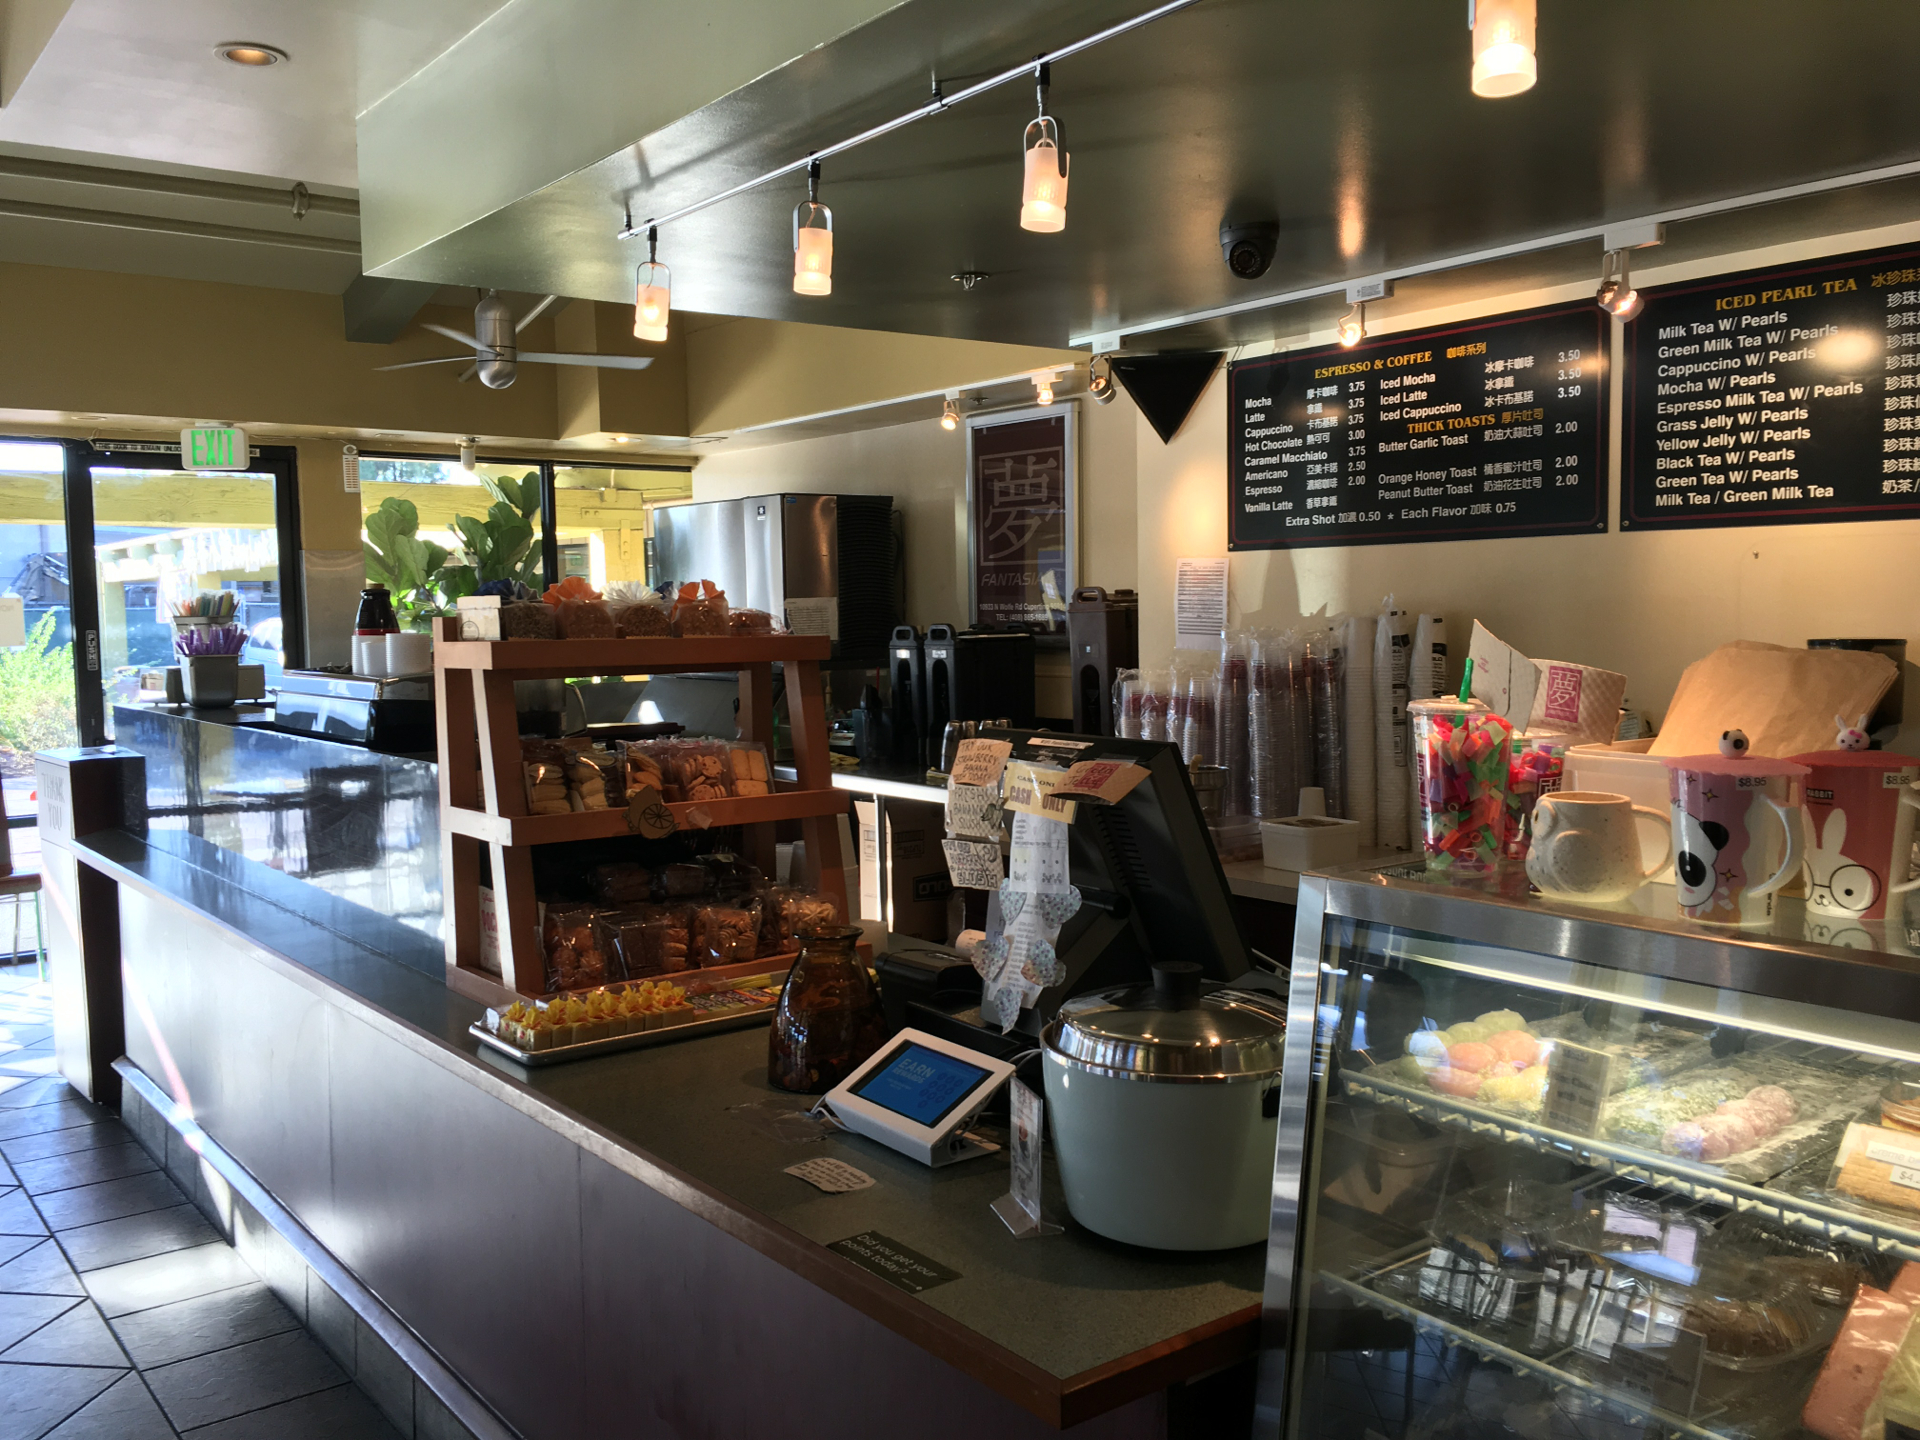 The counter at Fantasia Coffee & Tea.